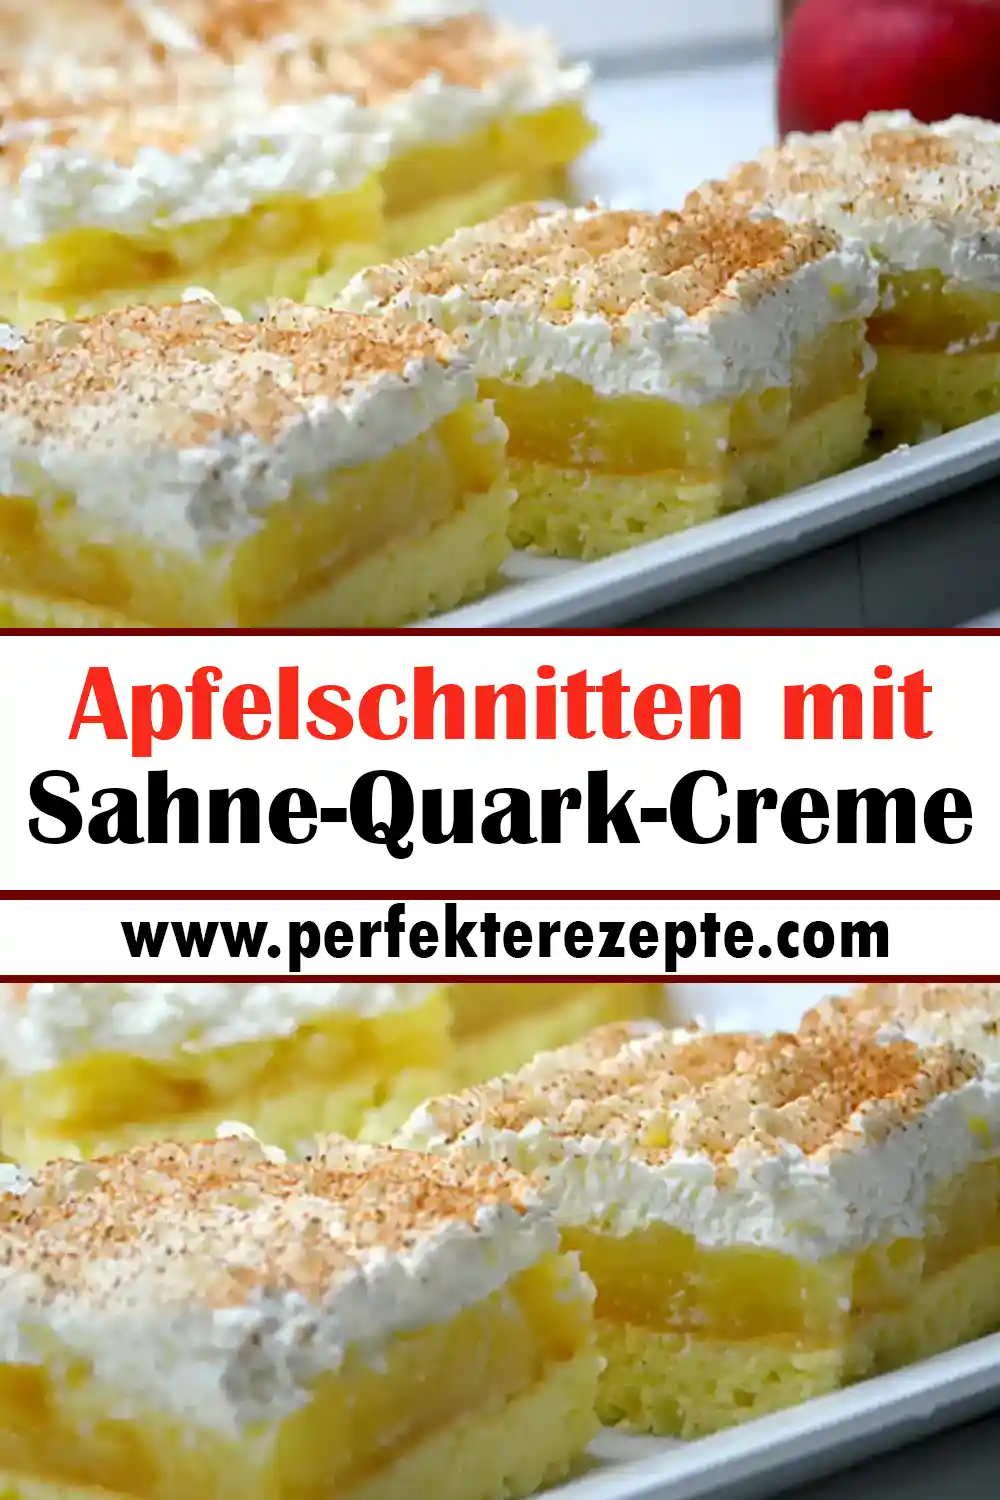 Purer Genuss: Apfelschnitten mit Sahne-Quark-Creme Rezept